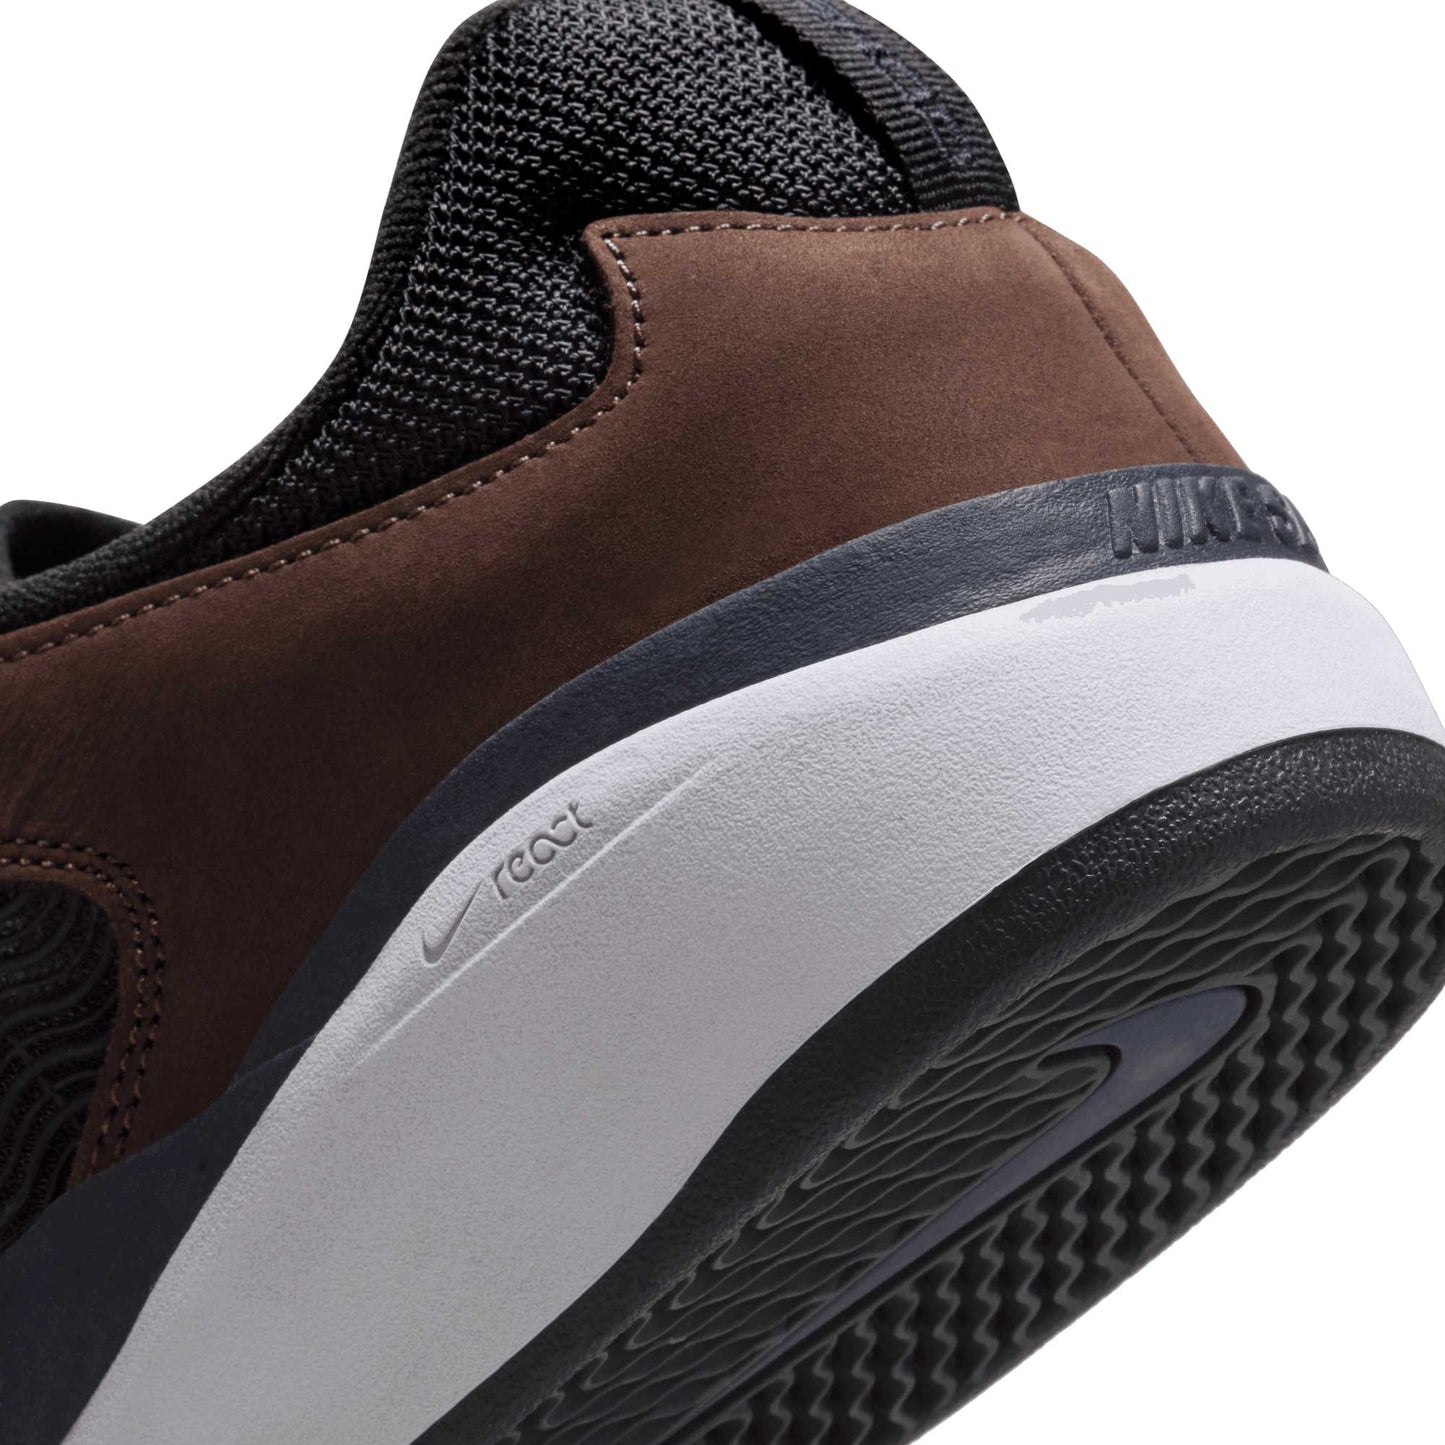 Nike SB Ishod Premium, baroque brown/obsidian-black - Tiki Room Skateboards - 10